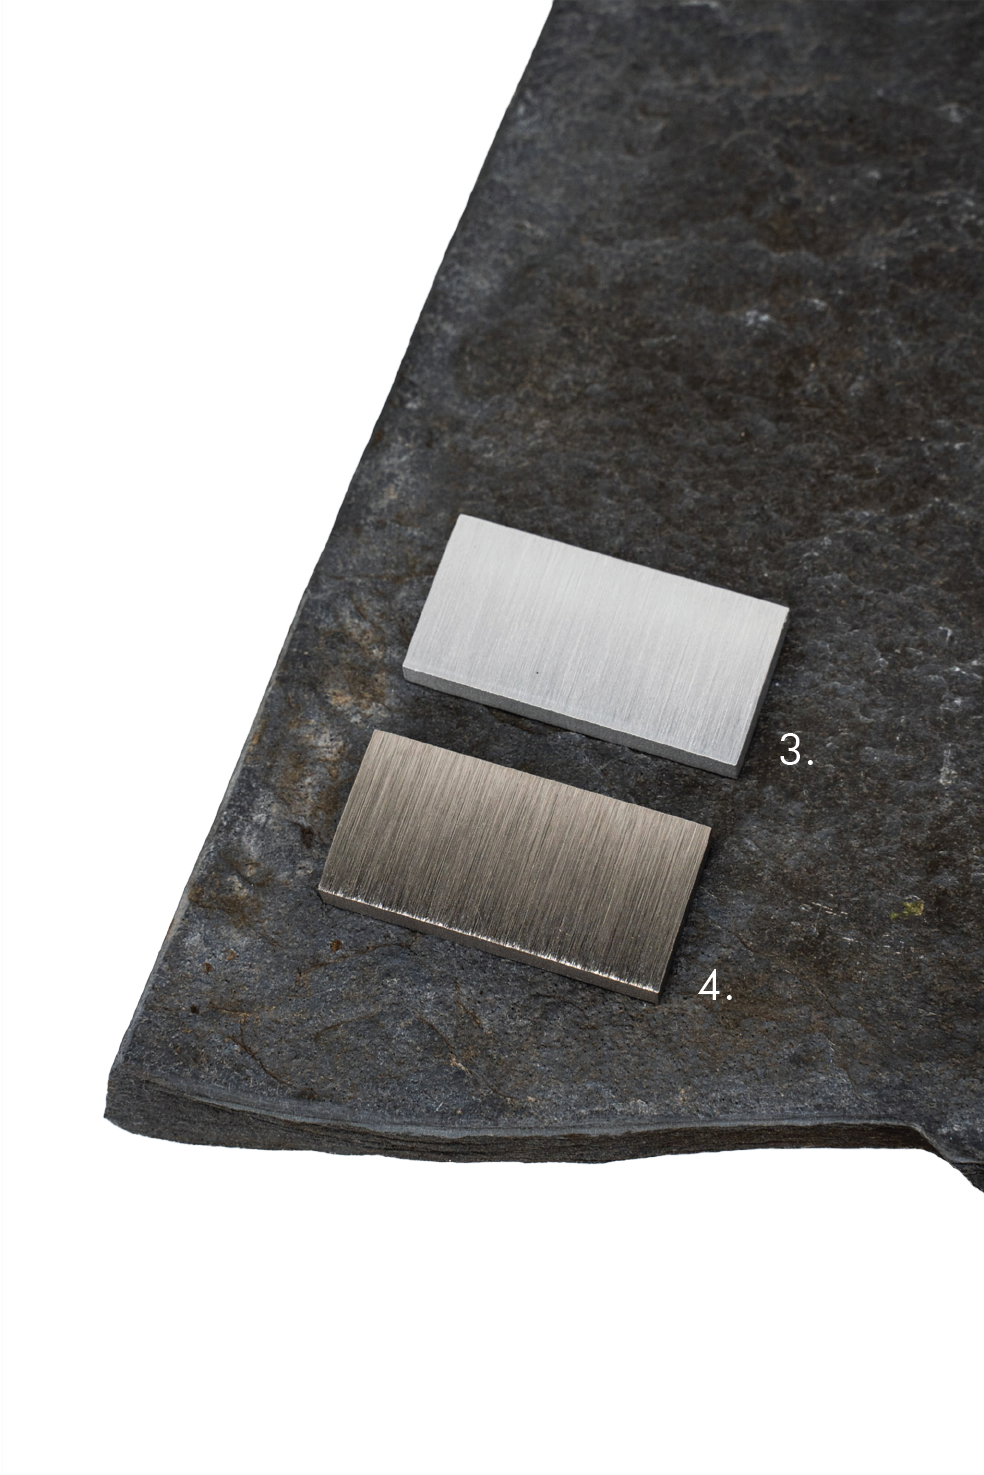 Comparaison des échantillons d'acier inoxydable et d'aluminium